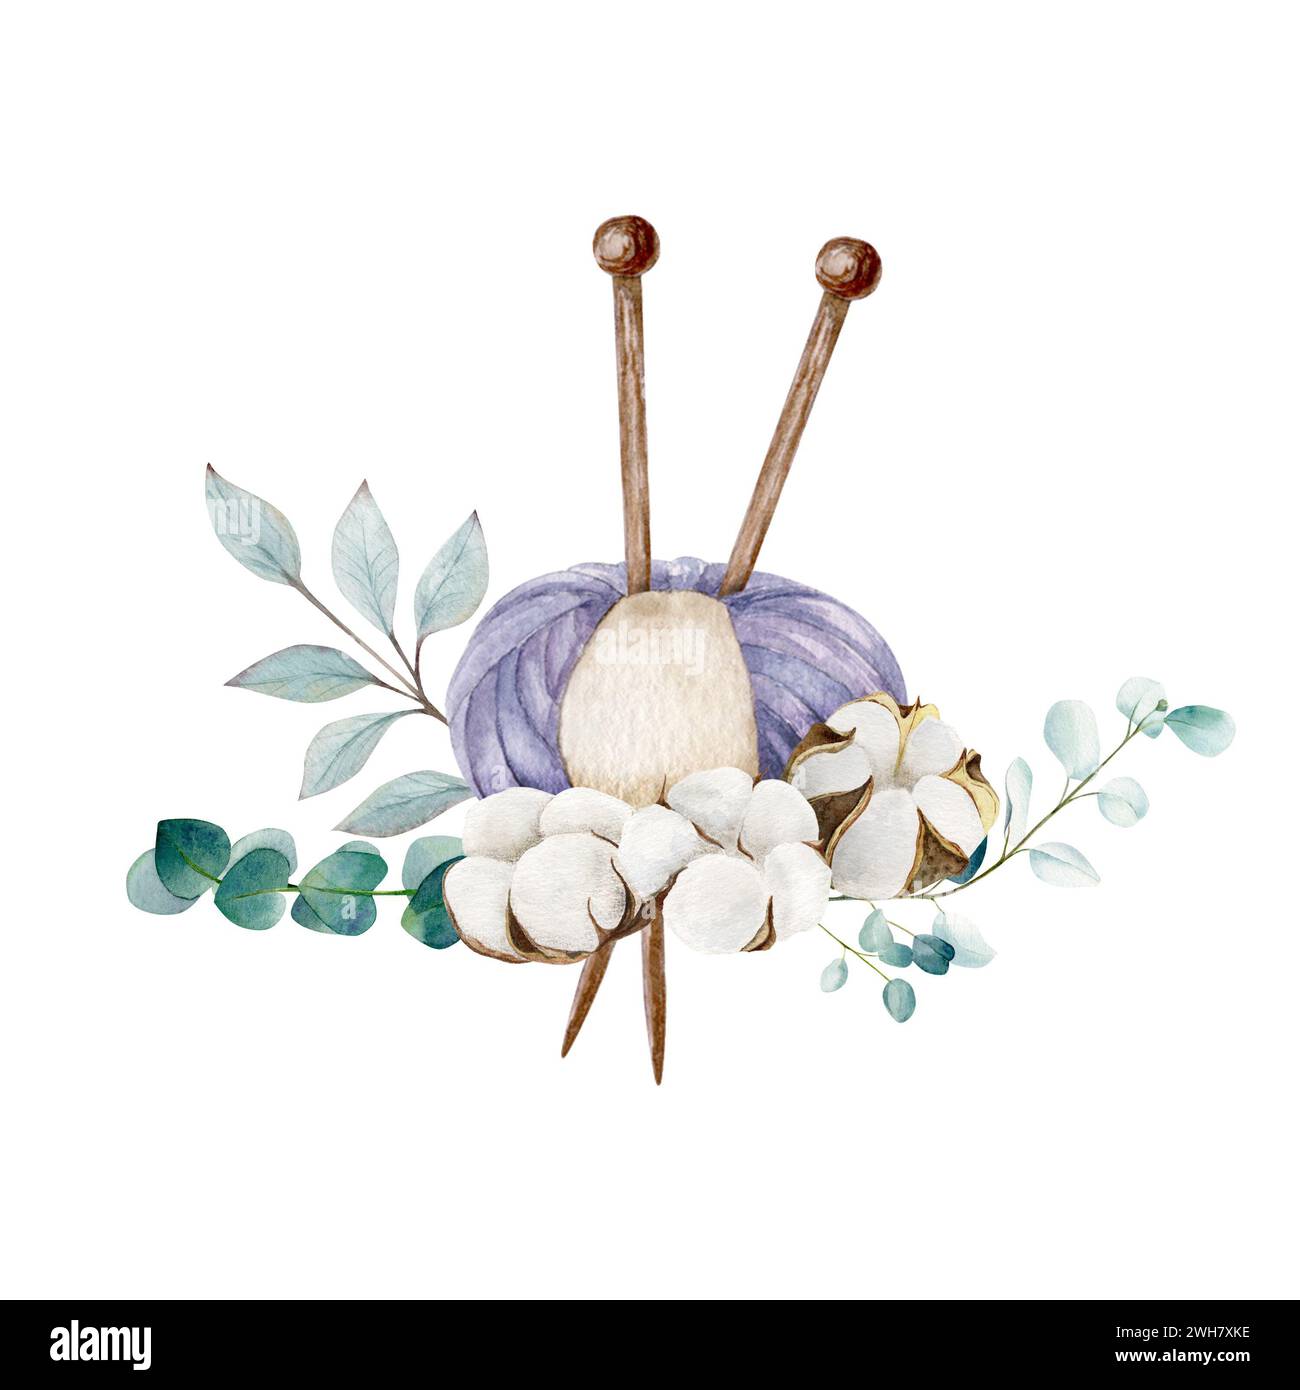 Boule à tricoter de fil et aiguilles pointues simples avec des bolls de coton et des branches d'eucalyptus, dessin à la main, illustration aquarelle Banque D'Images